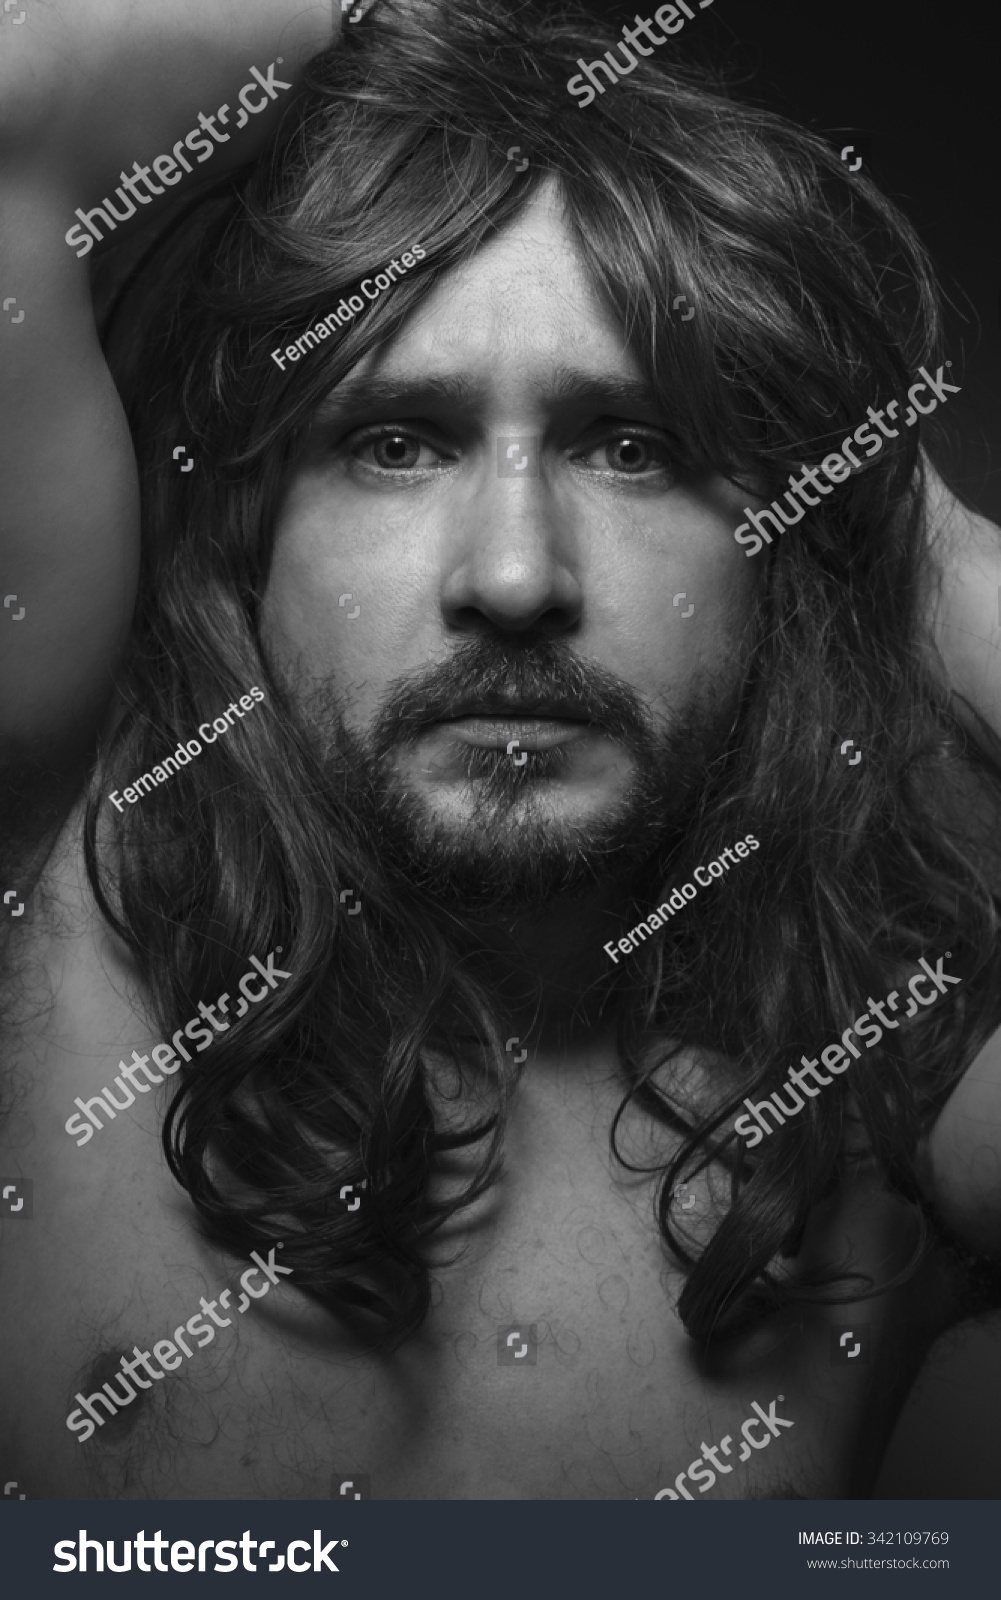 Naked Man Big Brown Hair Looking Stok Fotoğrafı 342109769 Shutterstock